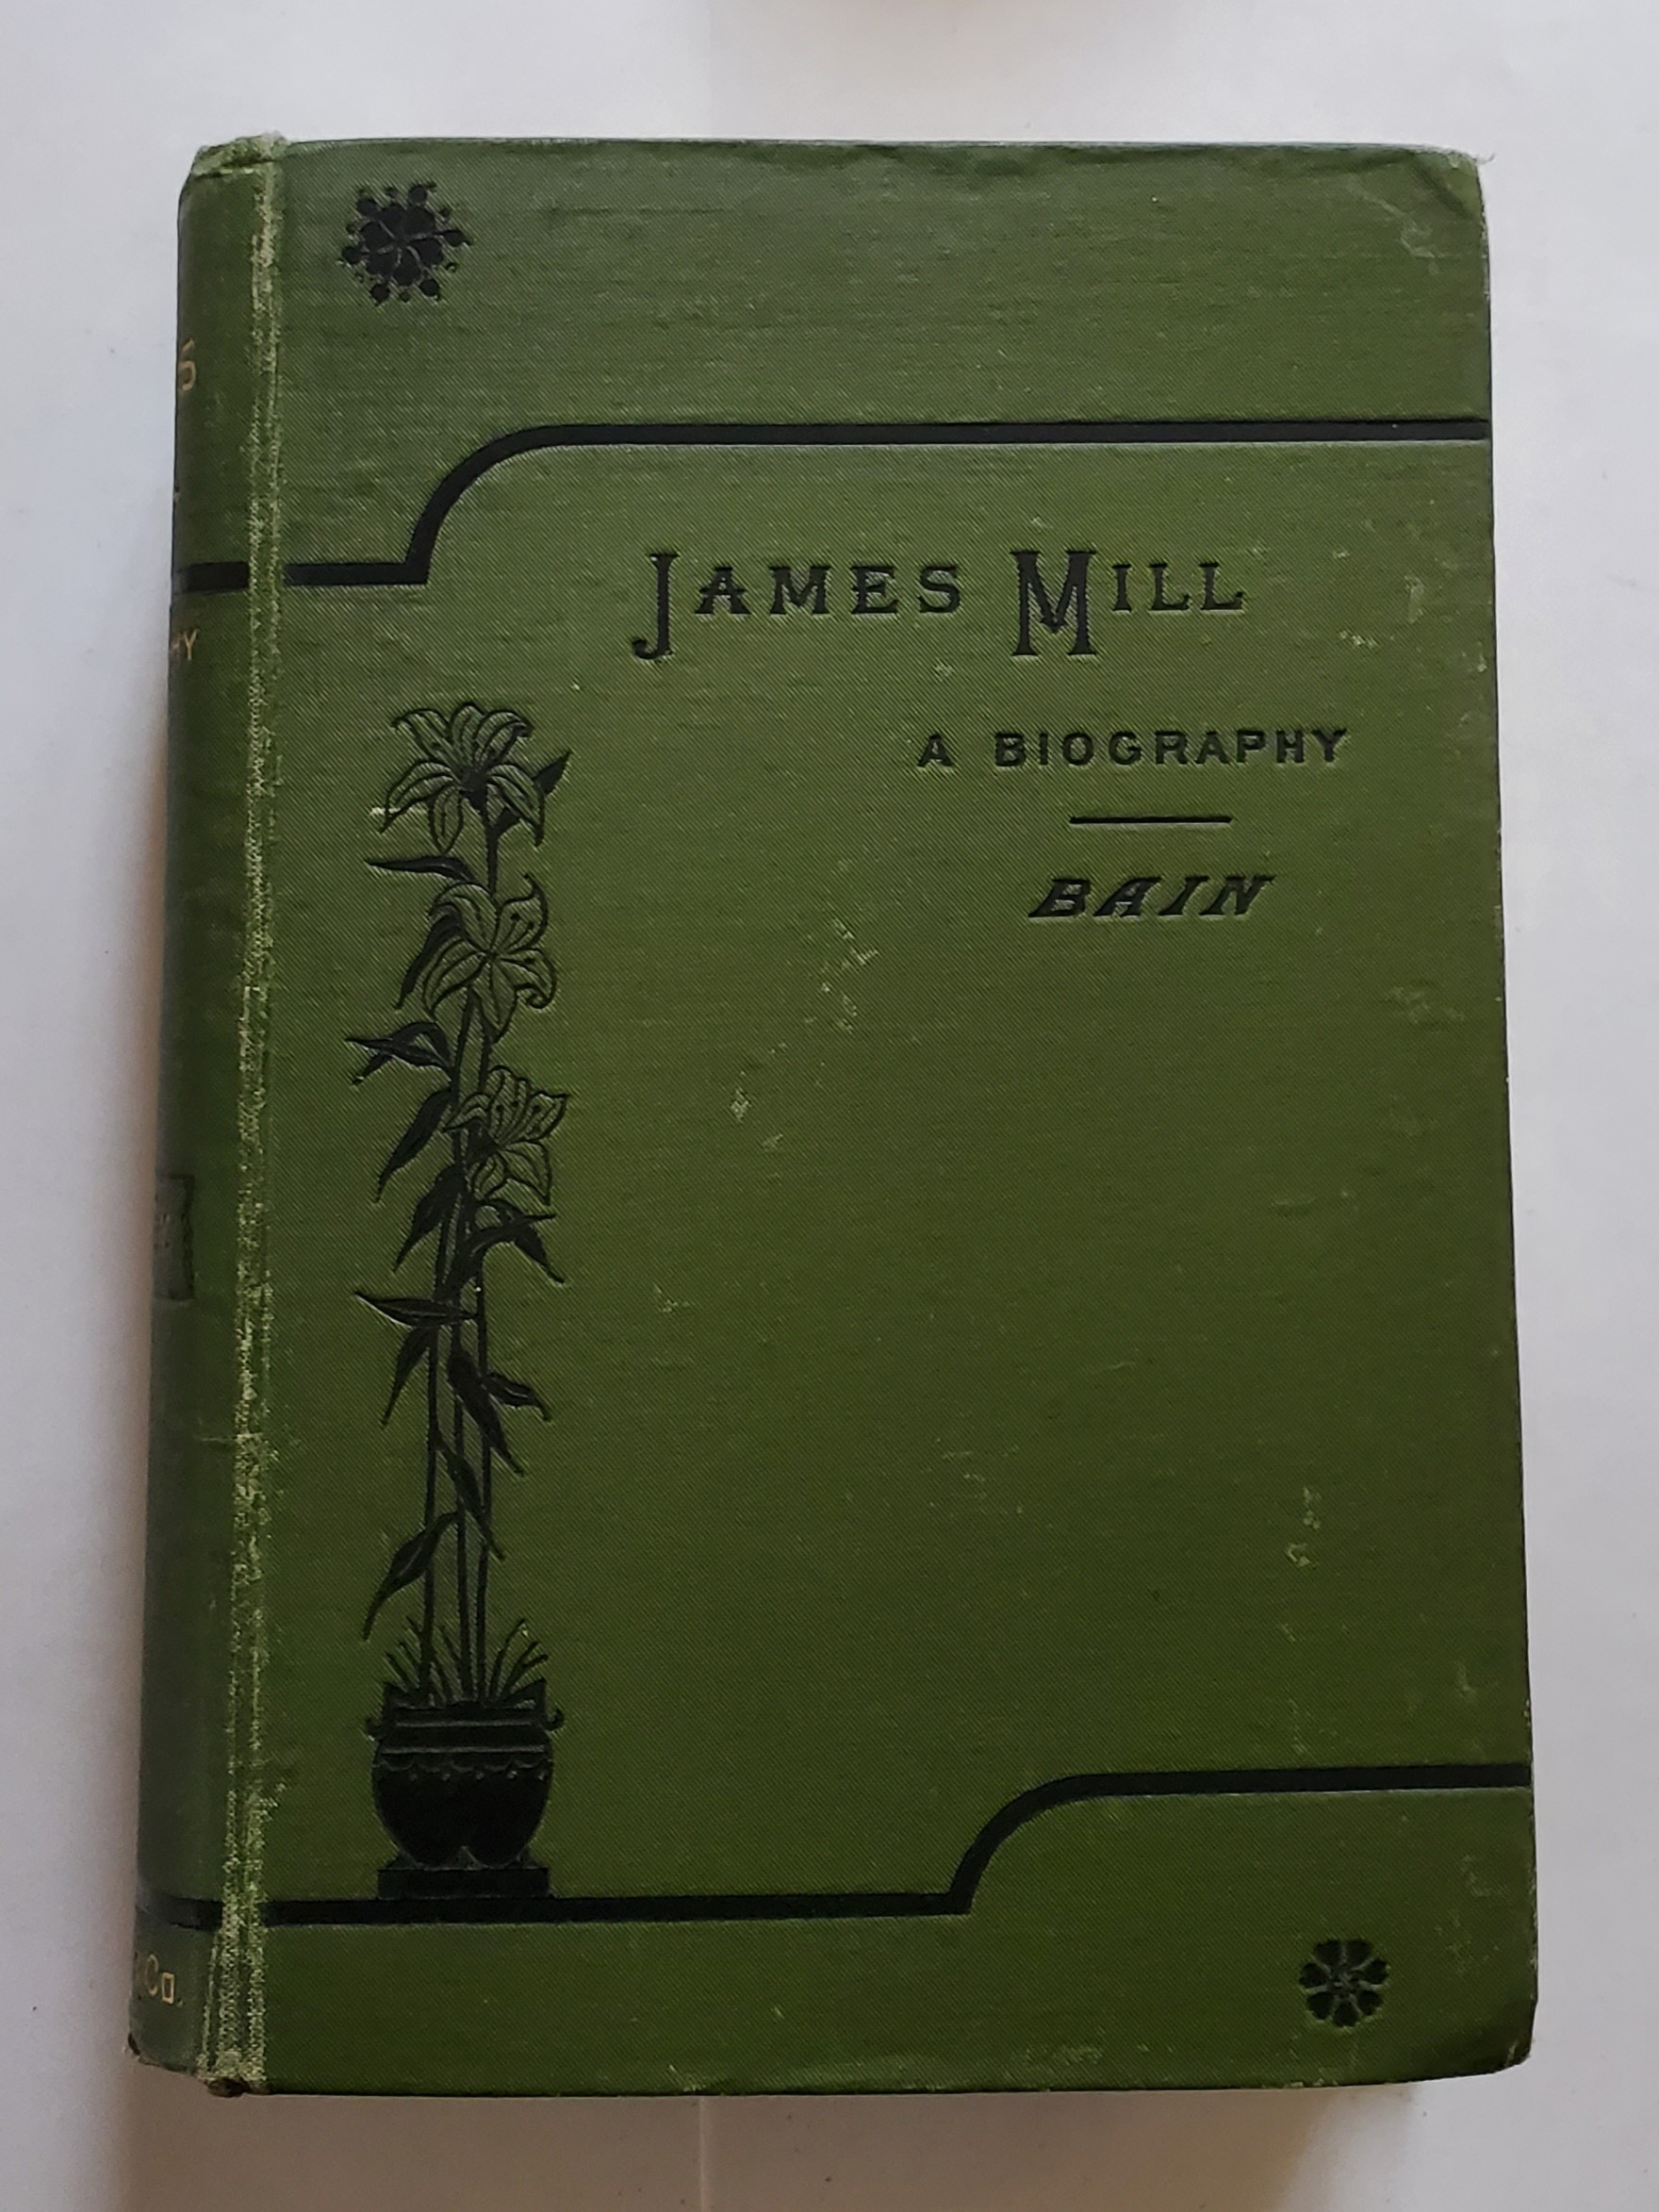 Alexander BAIN. James Mill. A Biography.